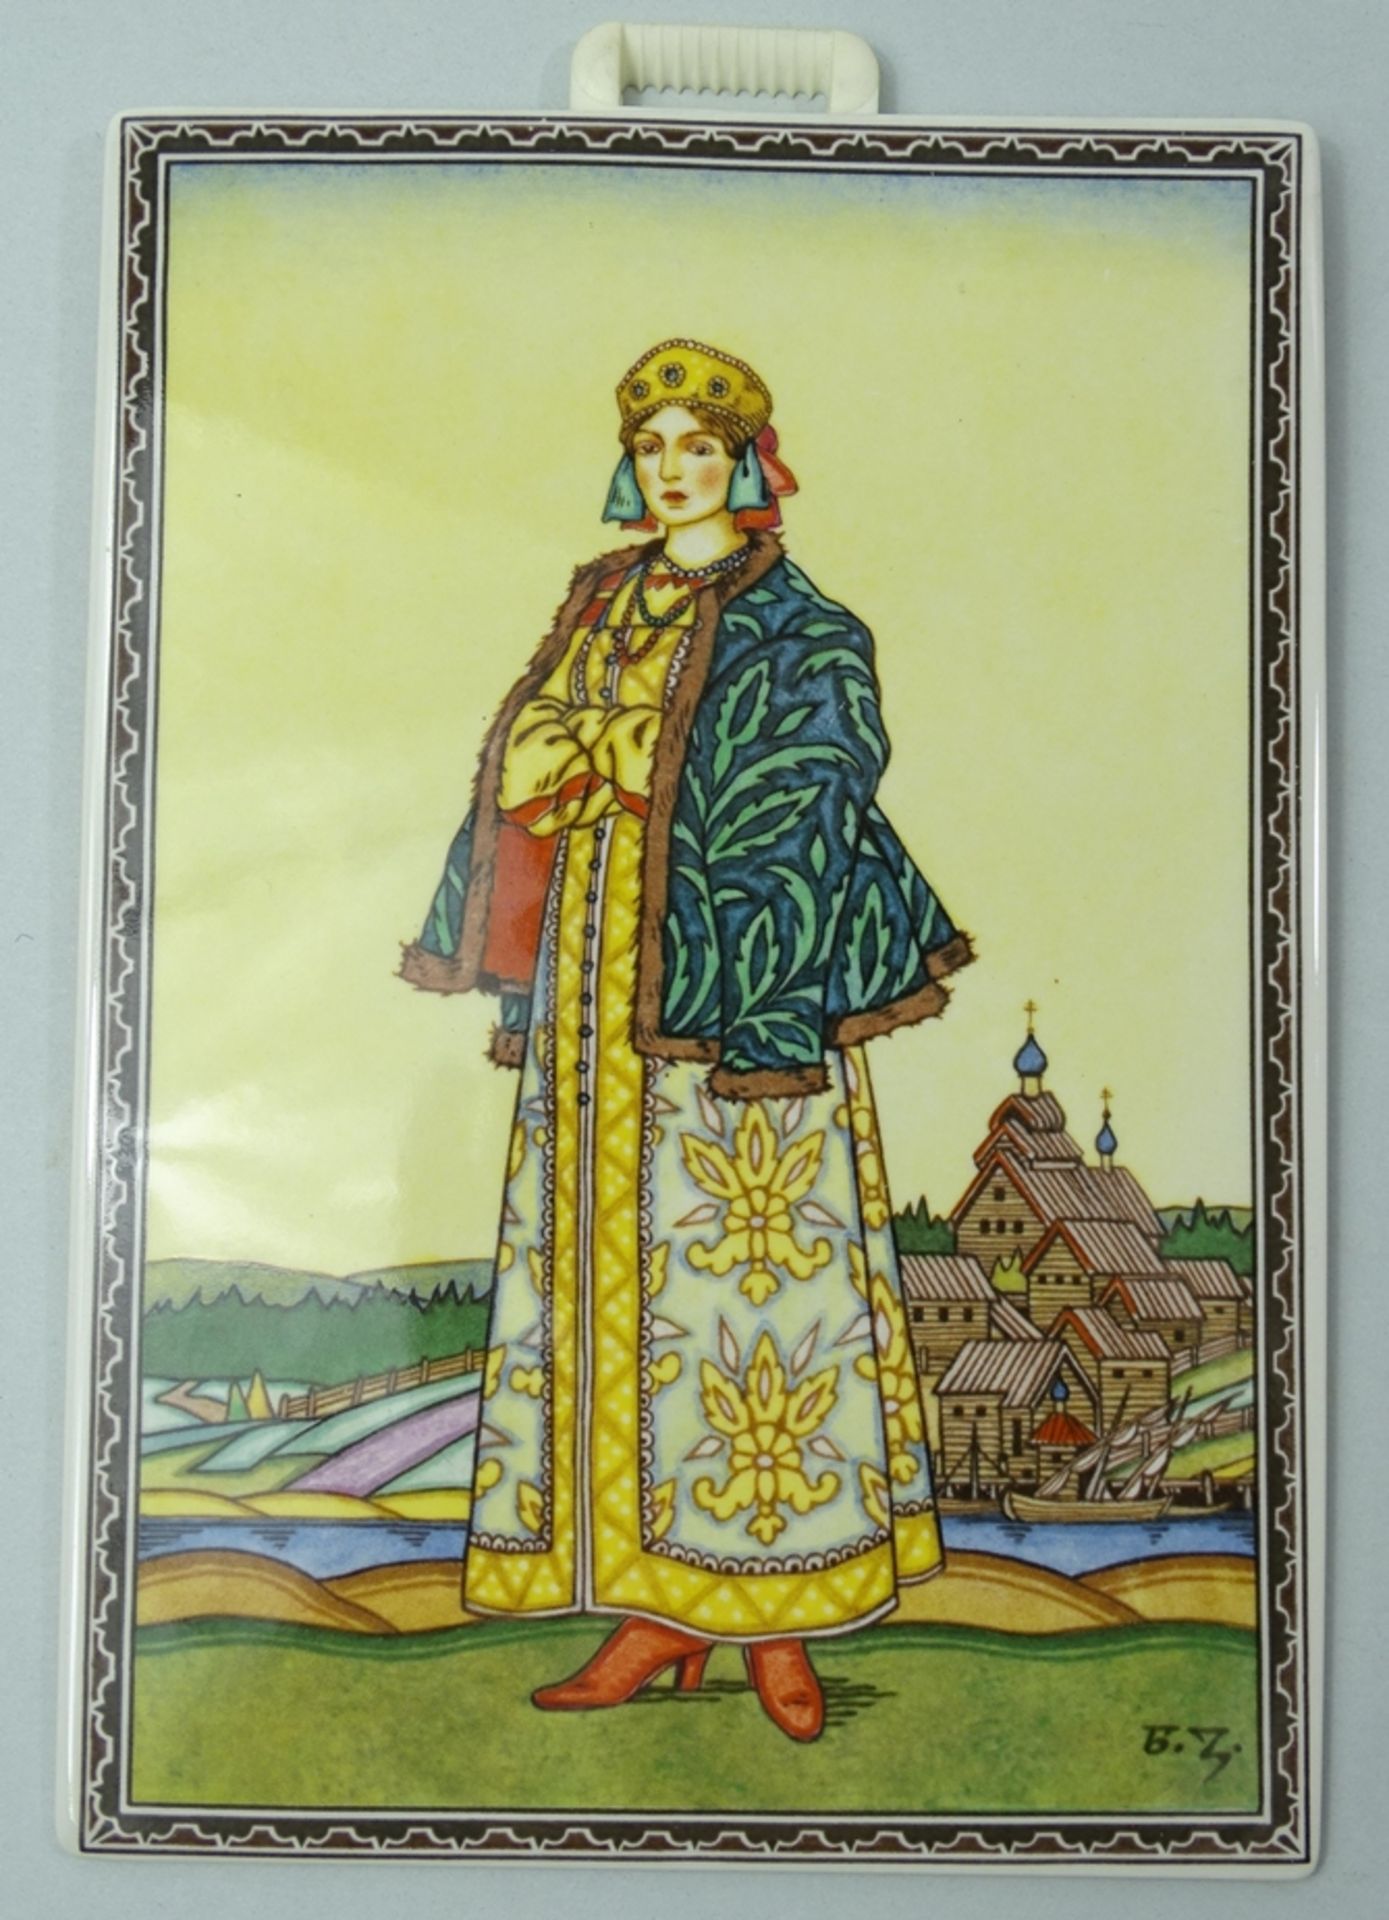 4 Porzellanbilder von Villeroy & Boch, Motive von Boris Zvorykin, je 17,5 x 12,5 cm - Image 2 of 10